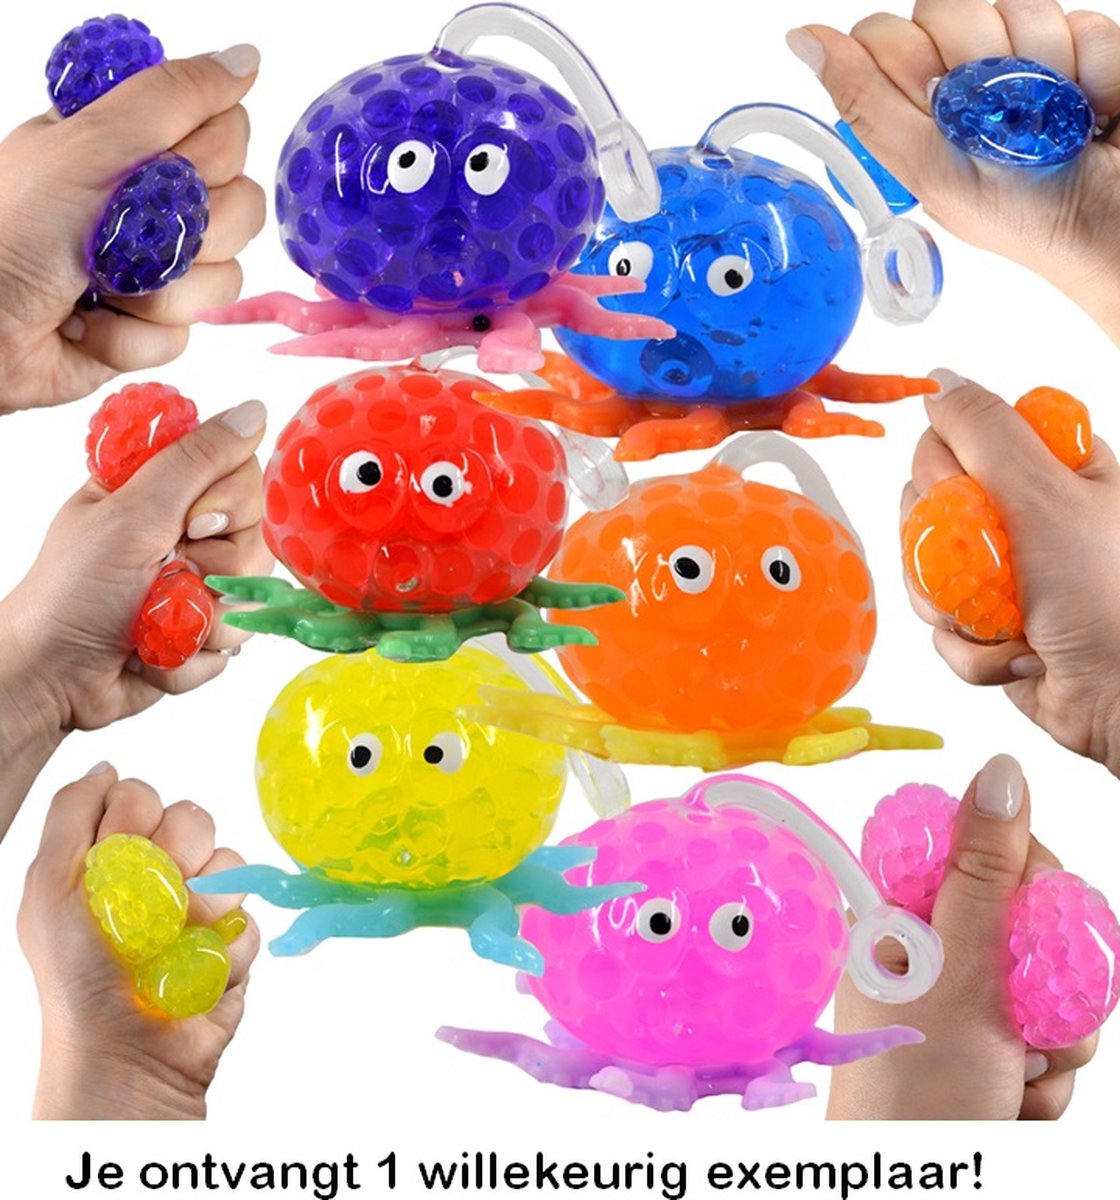 Balle anti-stress Orbeez - Boules d'eau - 6 cm - Fidget Toys